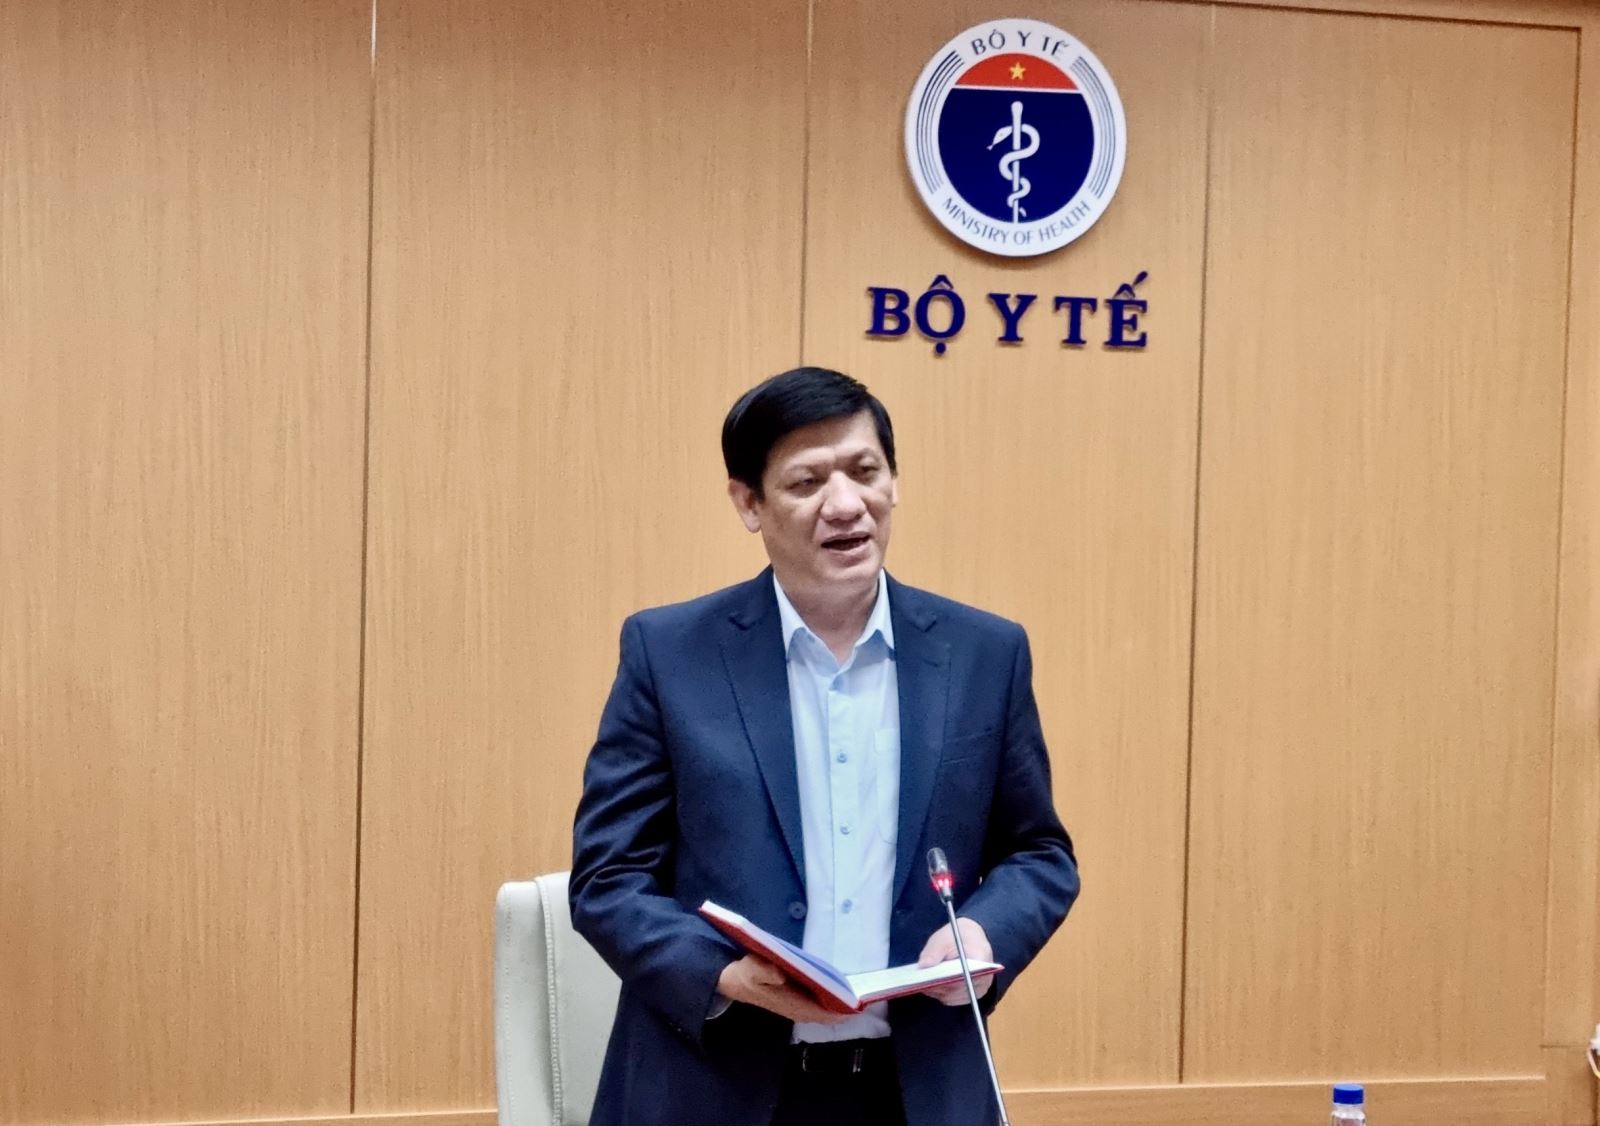 Bộ trưởng Bộ Y tế, GS.TS Nguyễn Thanh Long phát biểu khai mạc Hội nghị